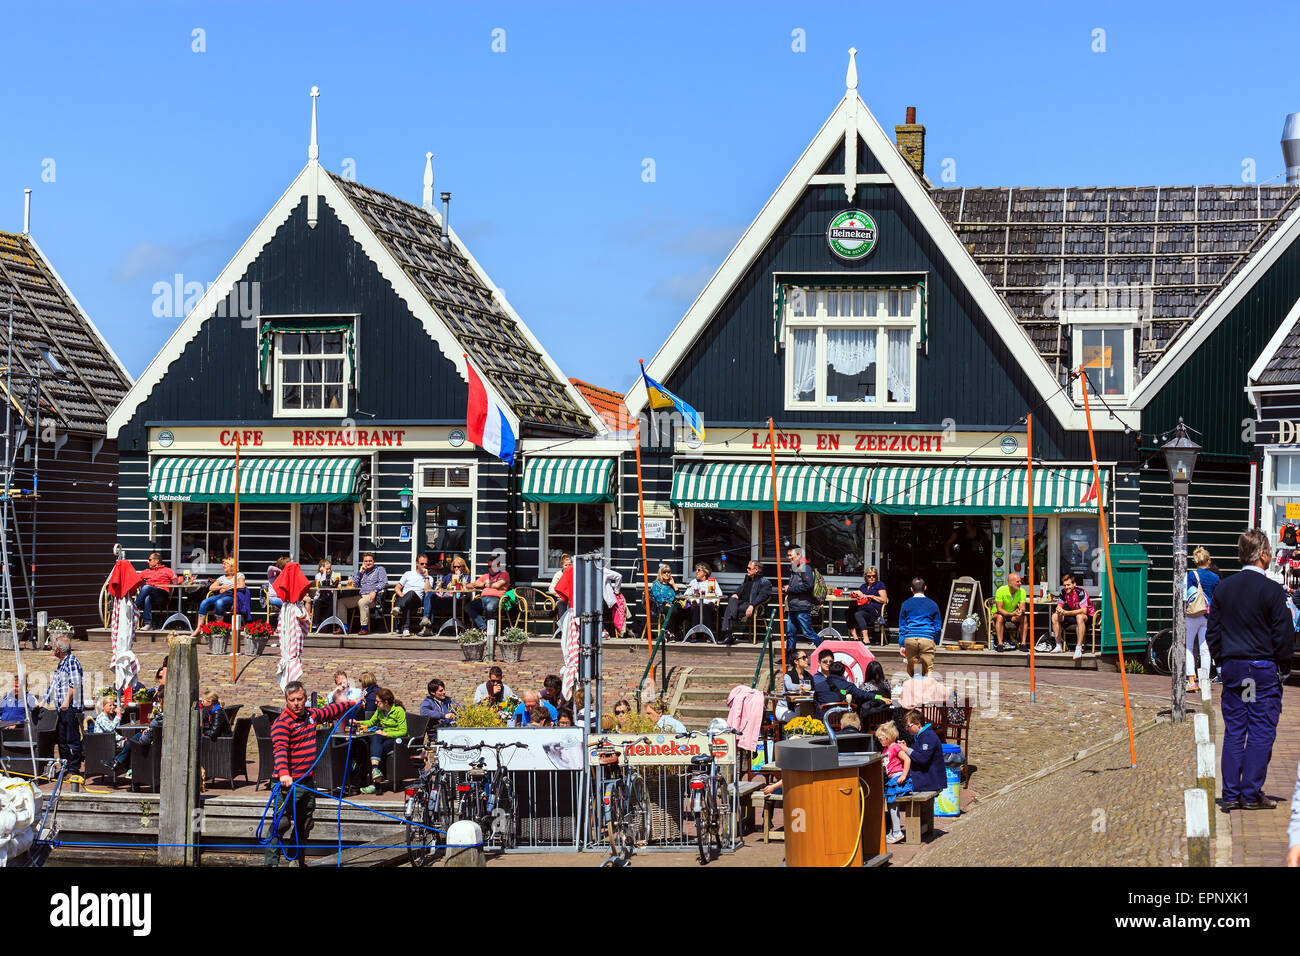 Die alte historische Stadt Marken, nördlich von Amsterdam, Niederlande. Stockfoto